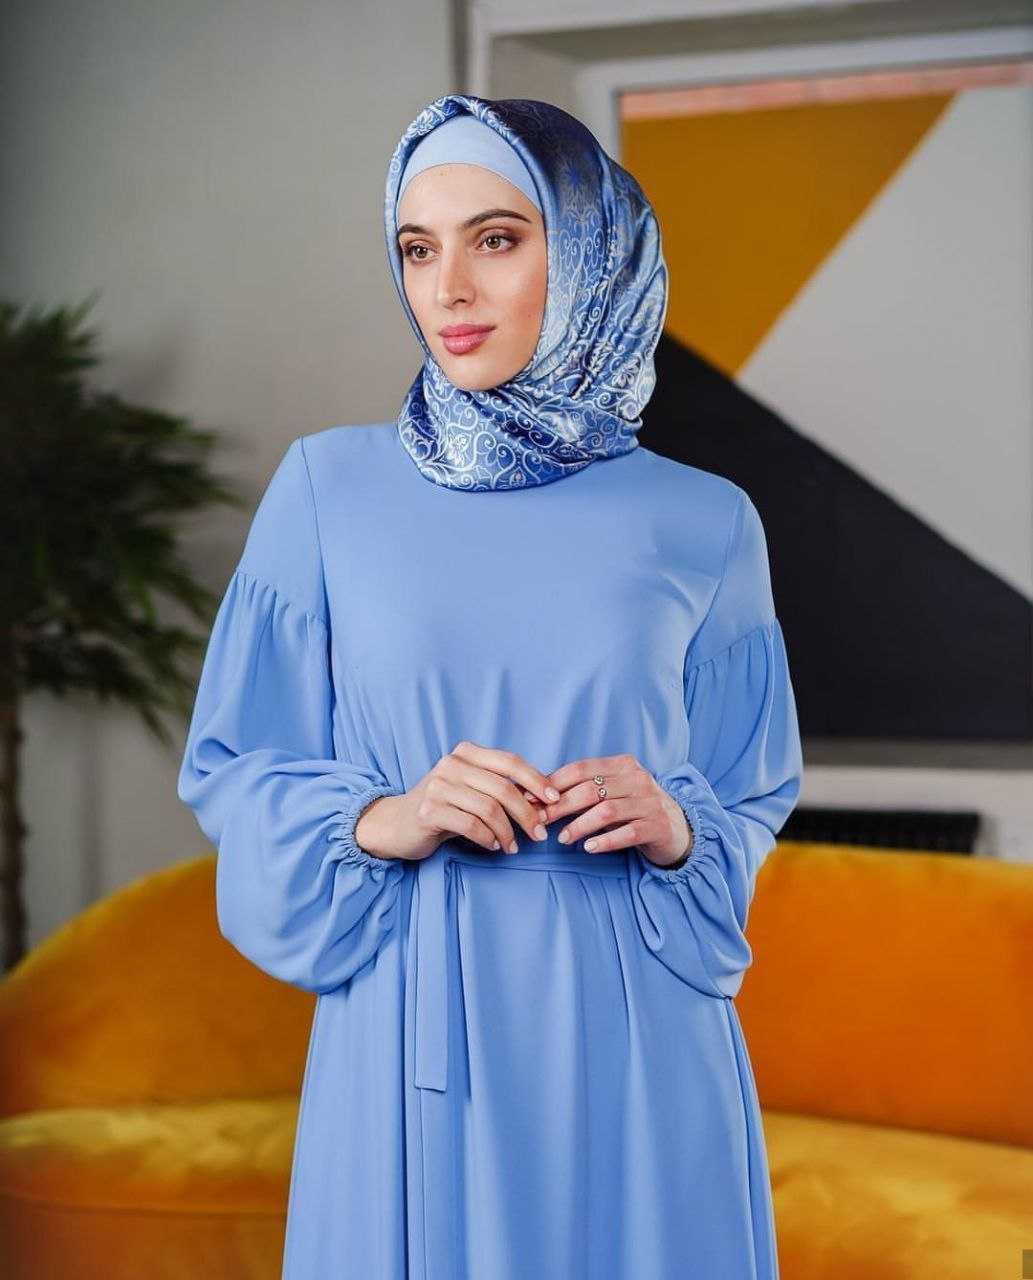 Мусульманская одежда для женщин от известных брендов и дизайнеров, таких как Амира, Сахара, Ирада, Мейденли, Резеда Сулейман и  другие Какие разновидности существуют и как правильно выбрать мусульманский наряд